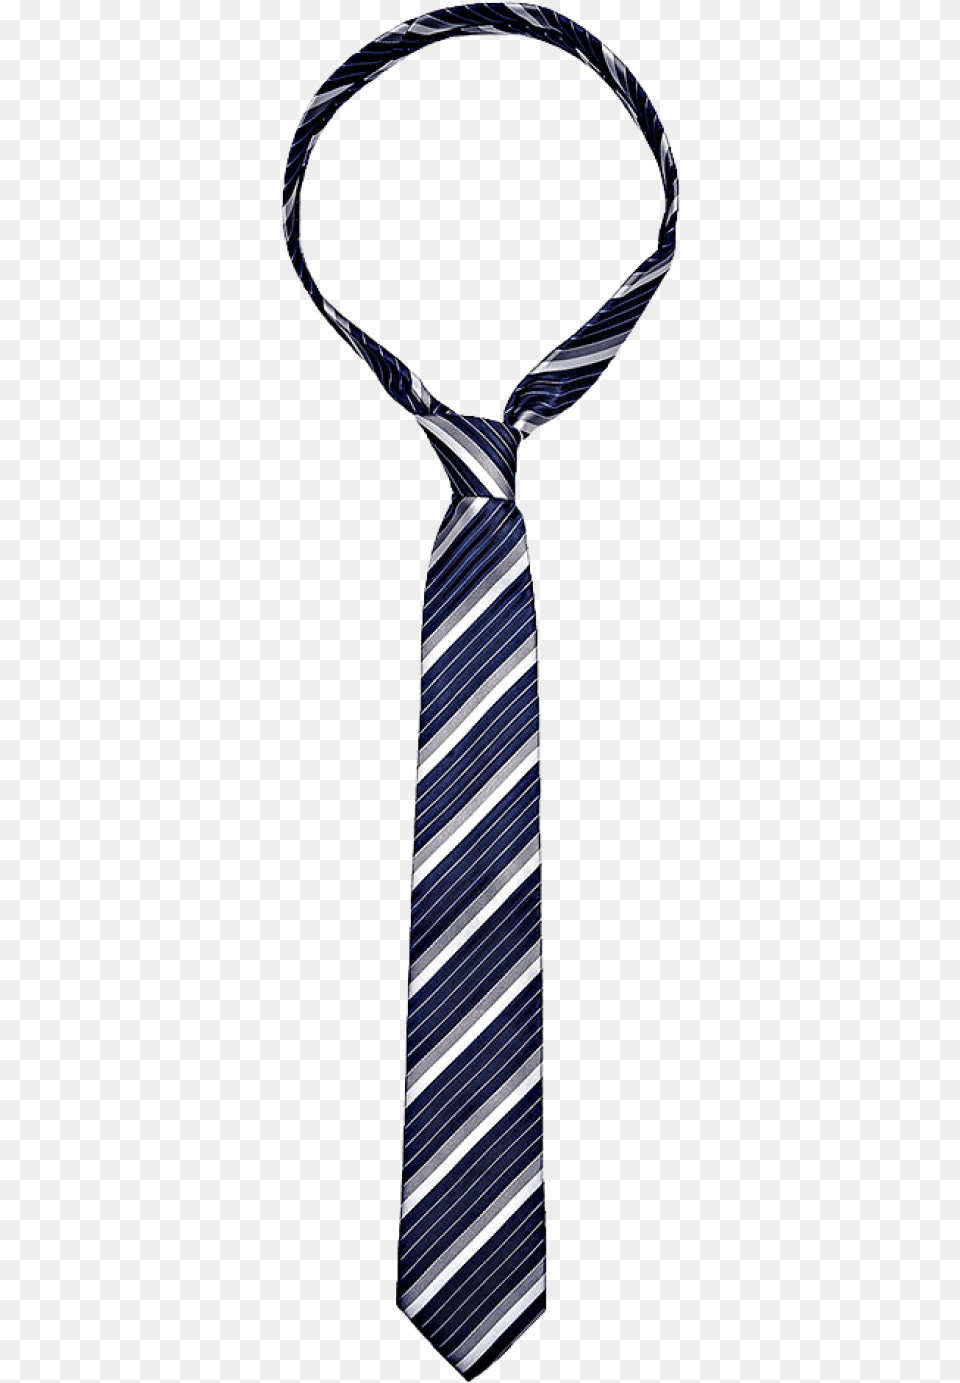 Background Necktie, Accessories, Formal Wear, Tie Free Transparent Png